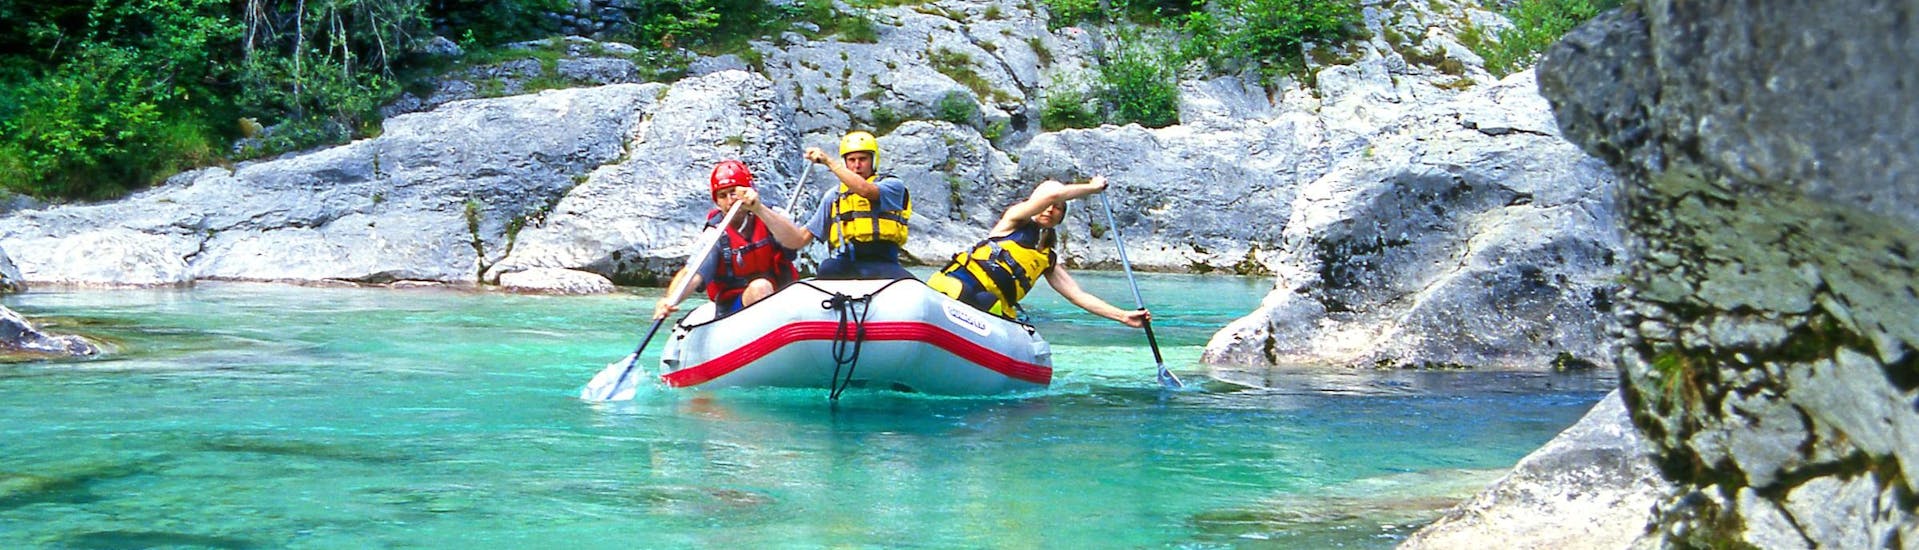 Un grupo de jóvenes disfruta haciendo rafting en Valle de Soča-Bovec, popular destino para los deportes de agua y de aventura como el rafting y el descenso de barrancos.  